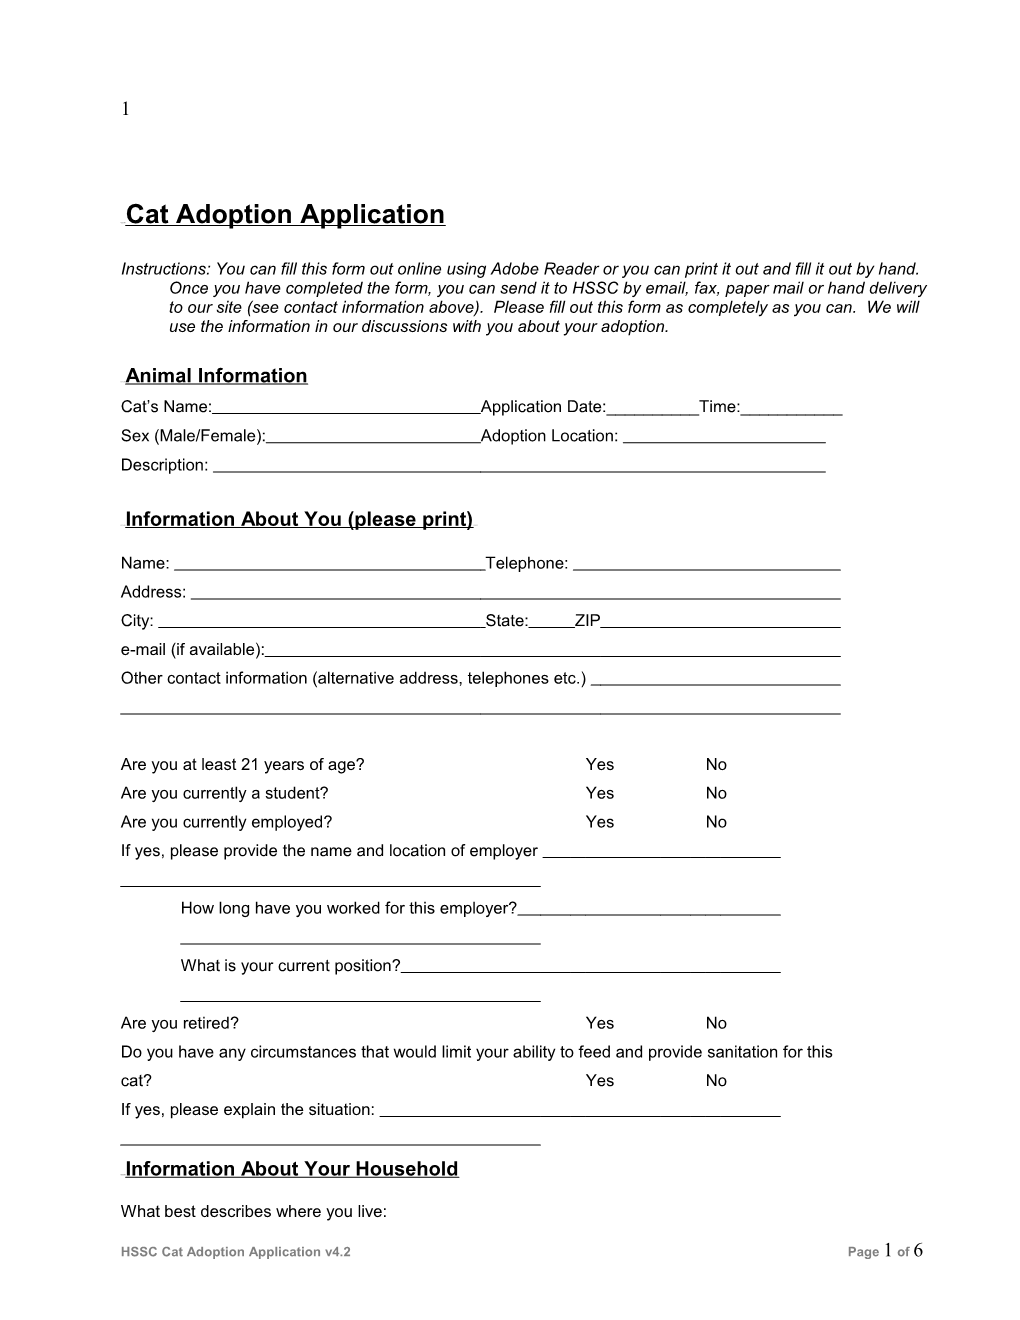 UUUU Cat Adoption Application